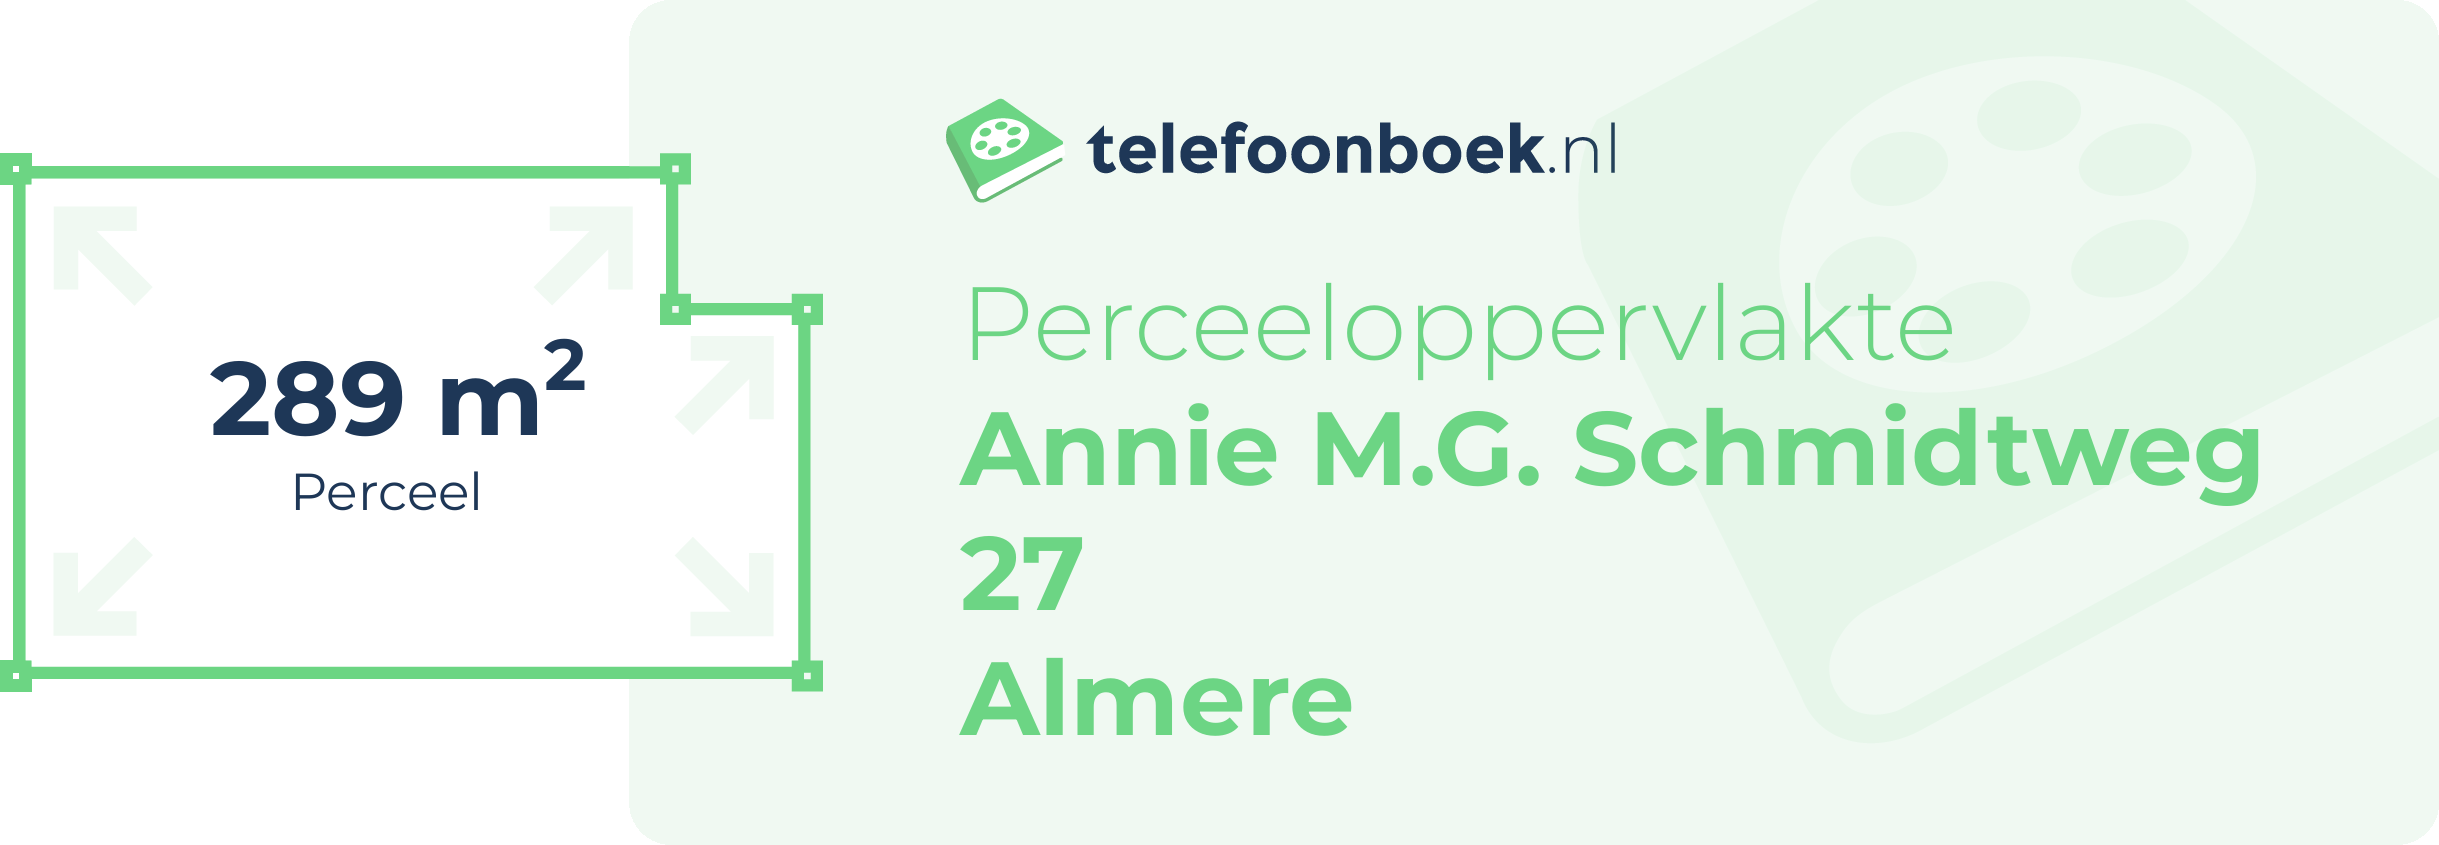 Perceeloppervlakte Annie M.G. Schmidtweg 27 Almere